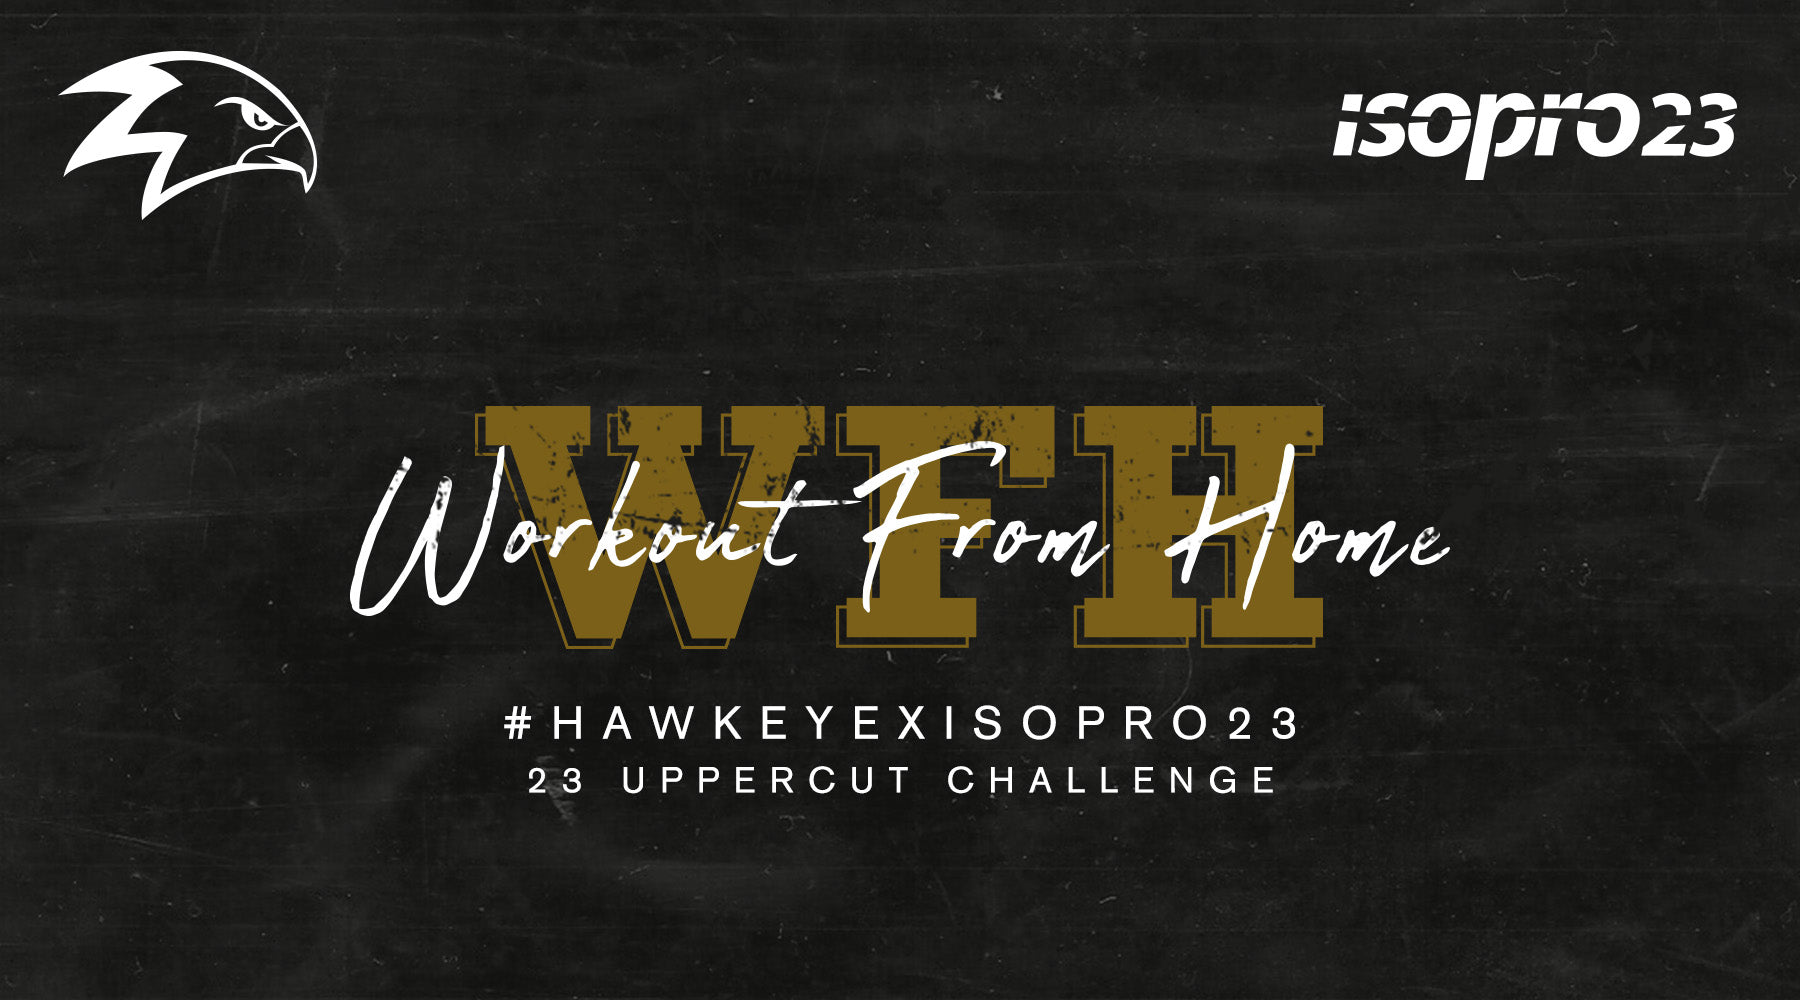 #HAWKEYEXISOPRO23 Uppercut Challenge